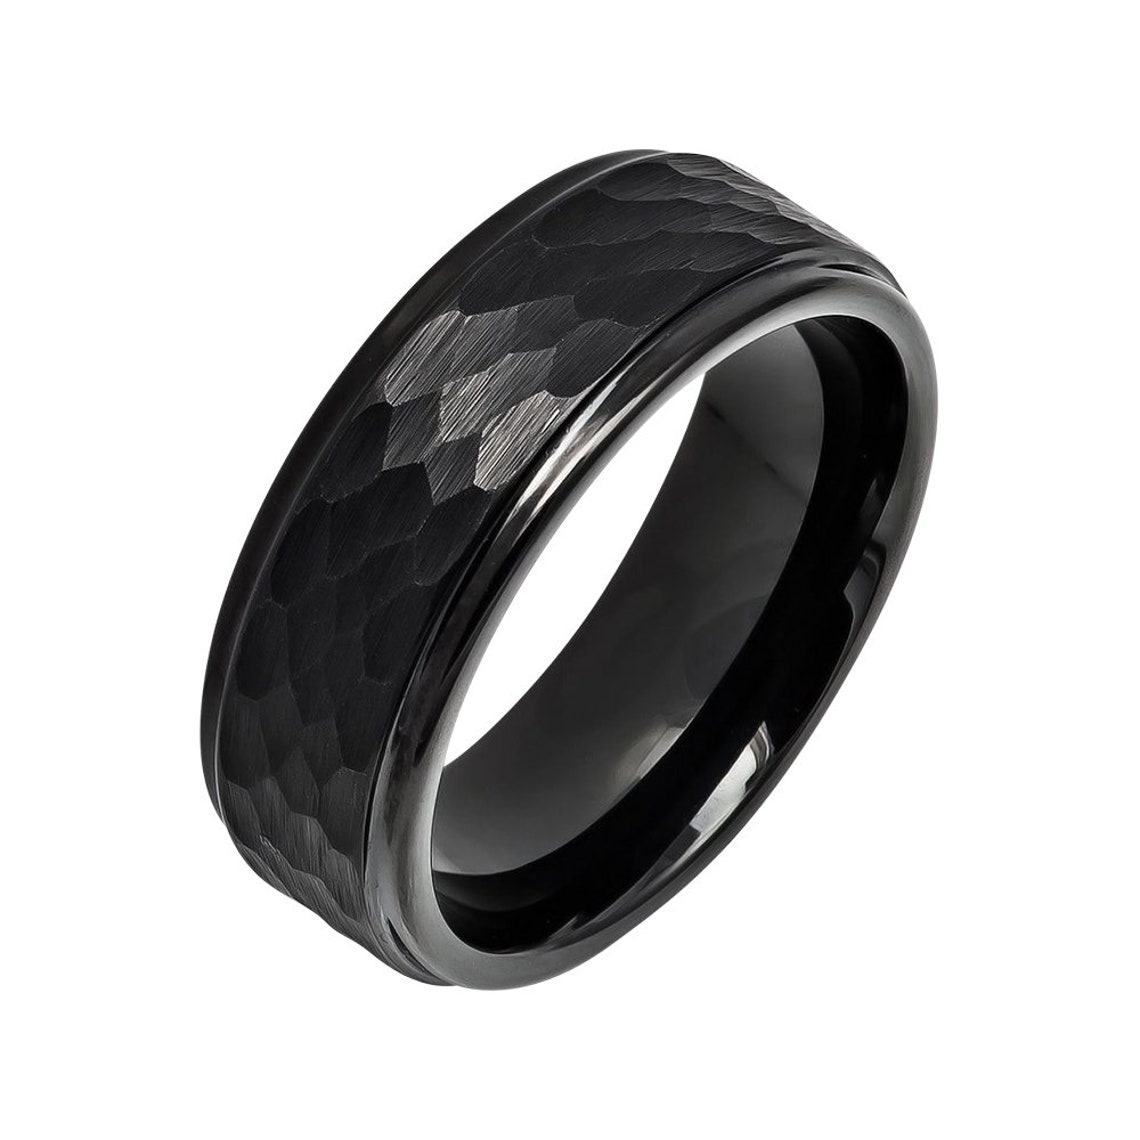 Black Cobalt Ring Hammered Wedding Band 8mm Black Cobalt | Etsy